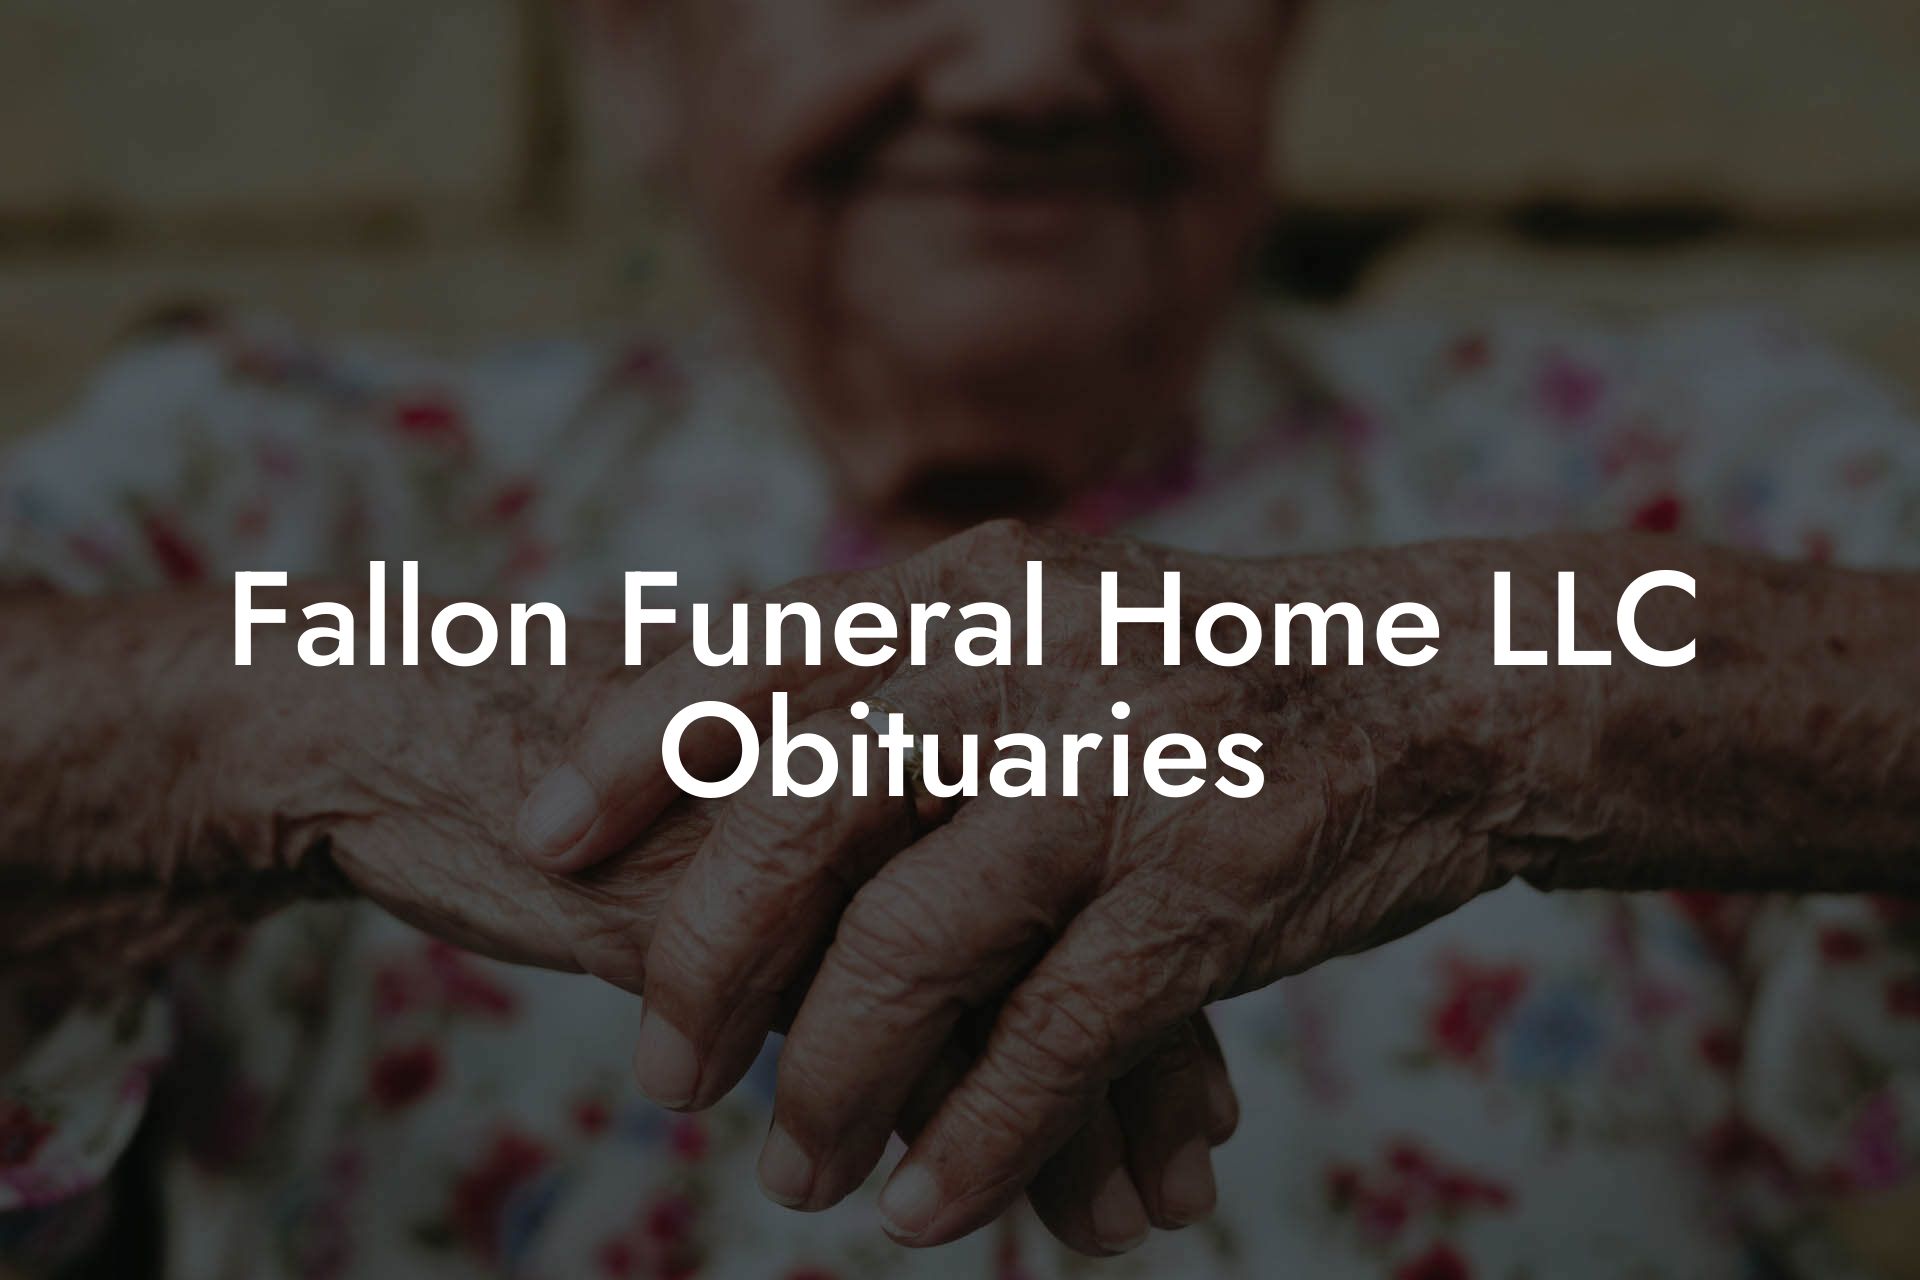 Fallon Funeral Home LLC Obituaries